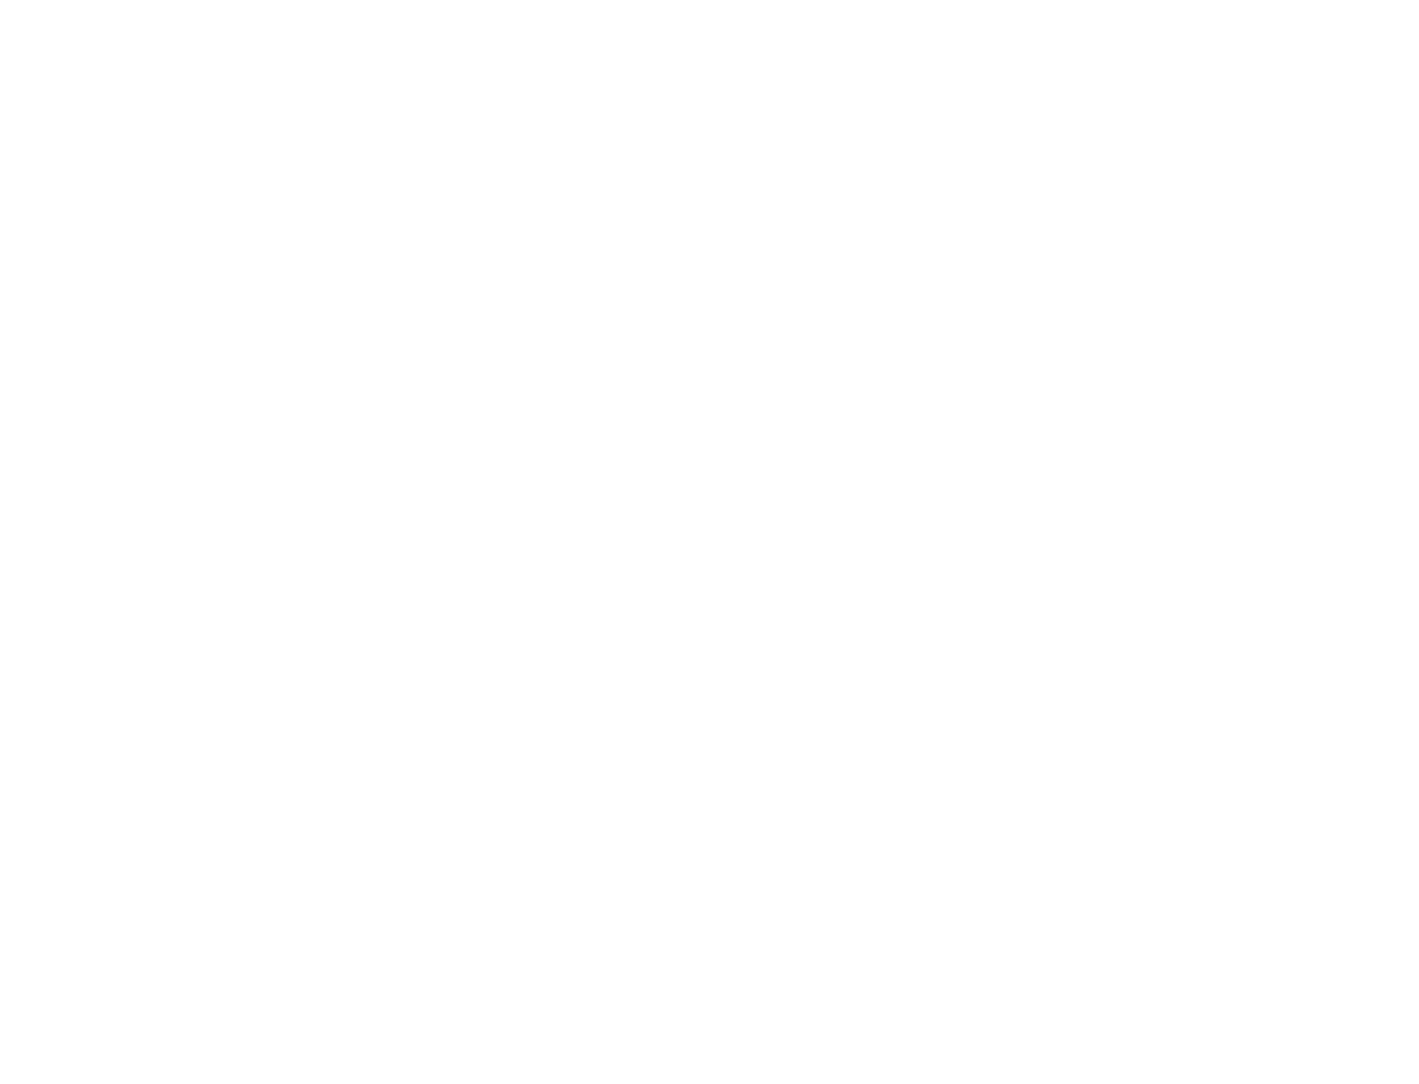 8 Million Ways to Die logo